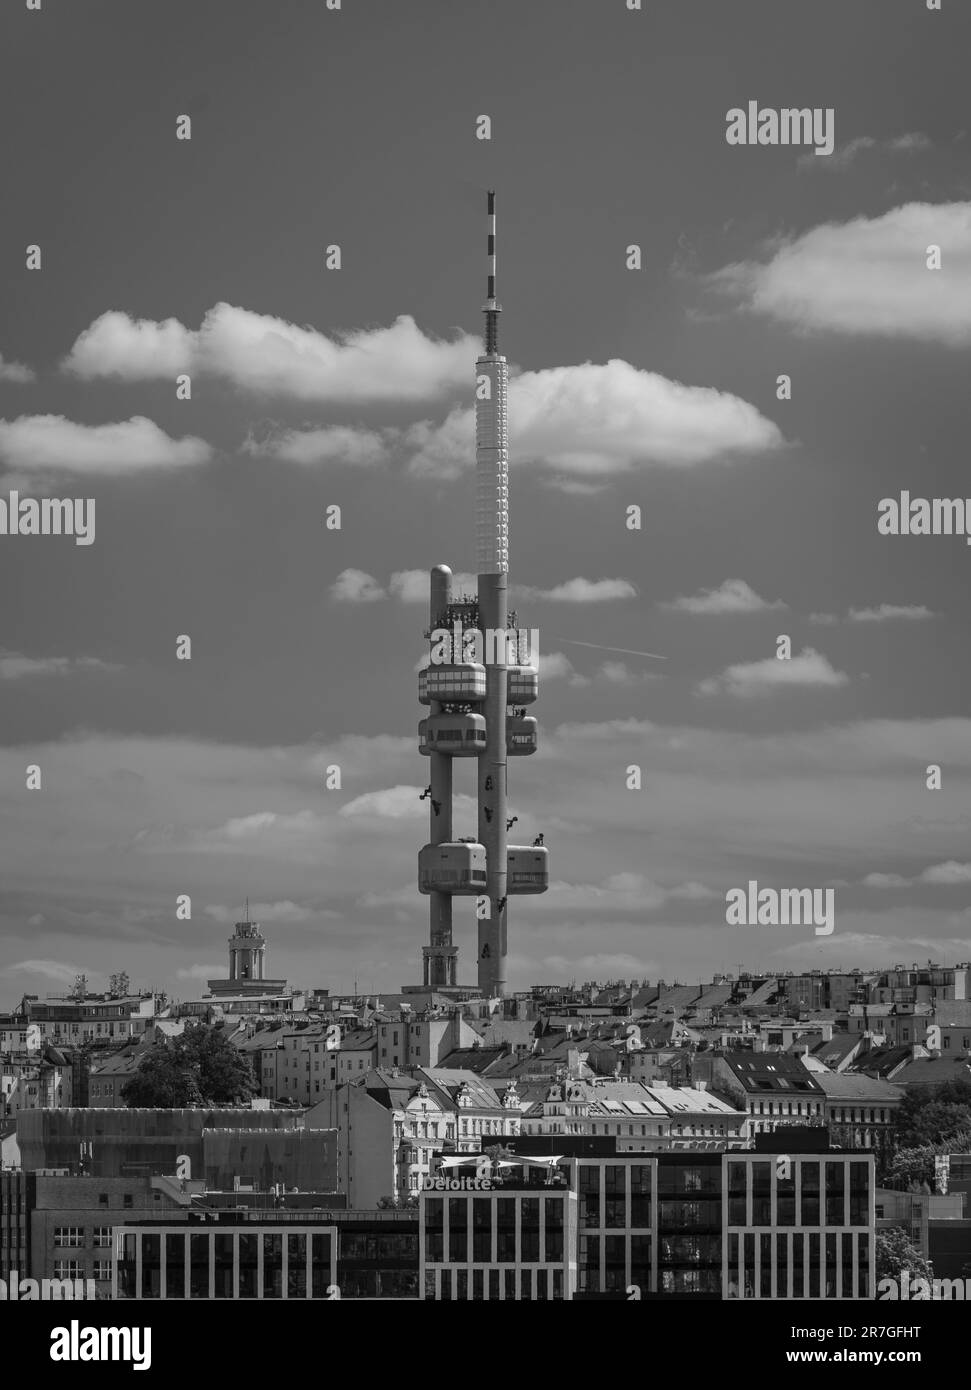 PRAGA, REPÚBLICA CHECA, EUROPA - Torre de televisión Zizkov, una torre de transmisor de 216m, y paisaje urbano. Foto de stock